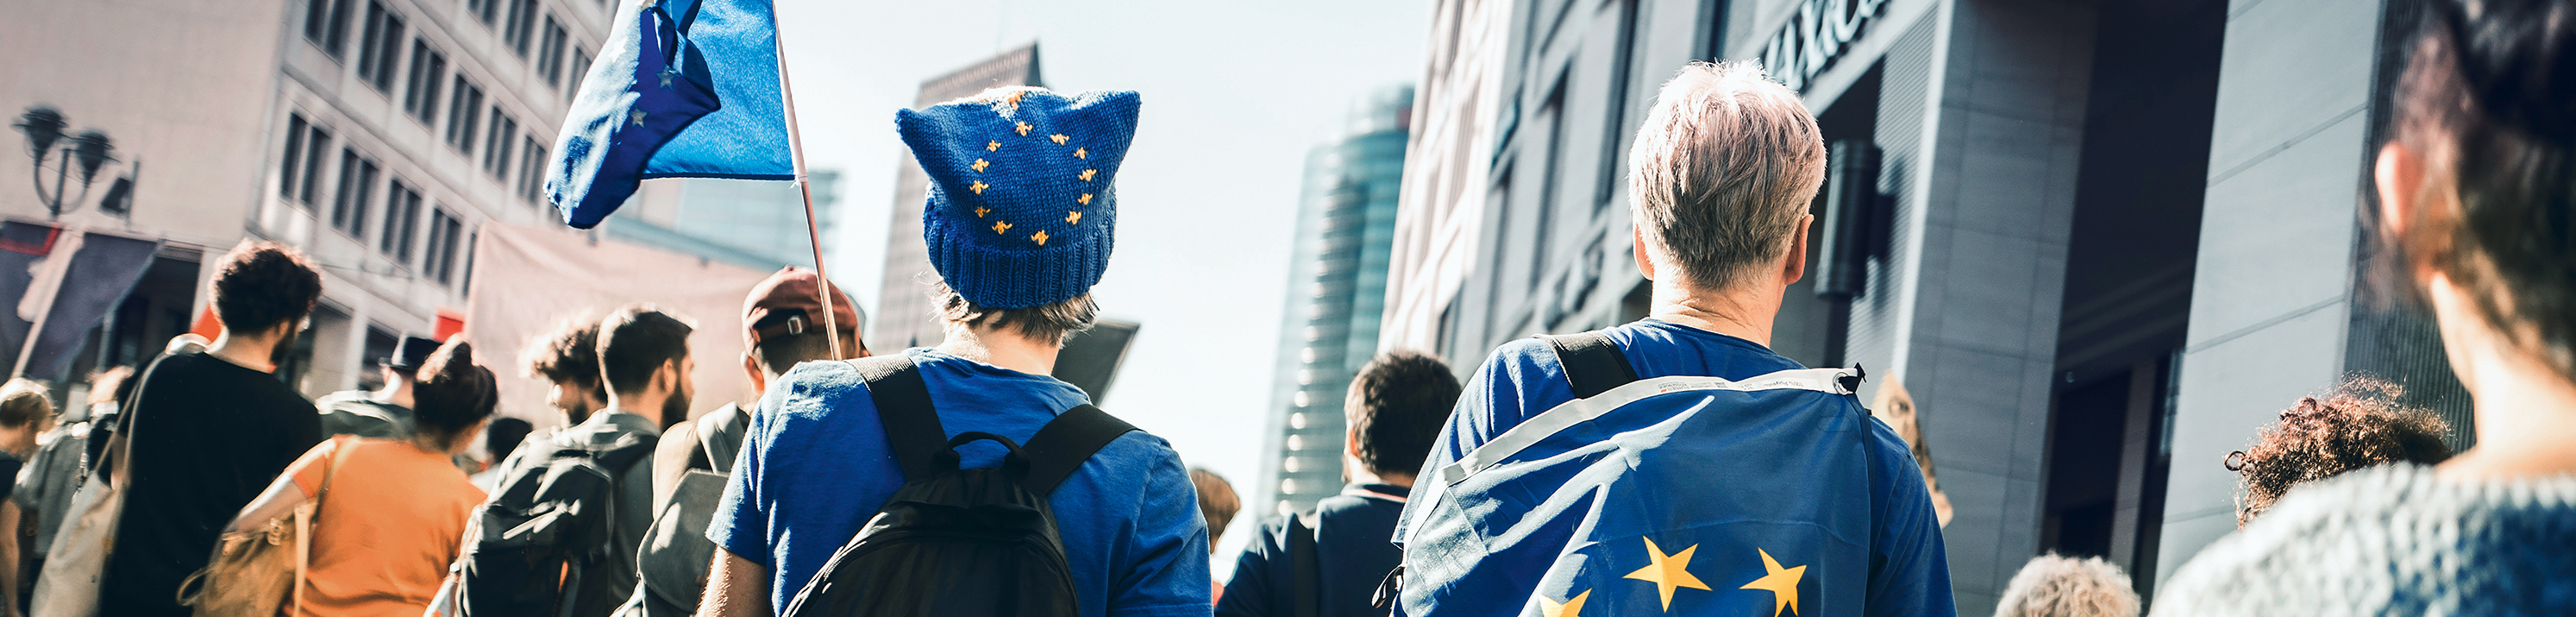 Foto: Junge Menschen gehen für Europa auf die Straße